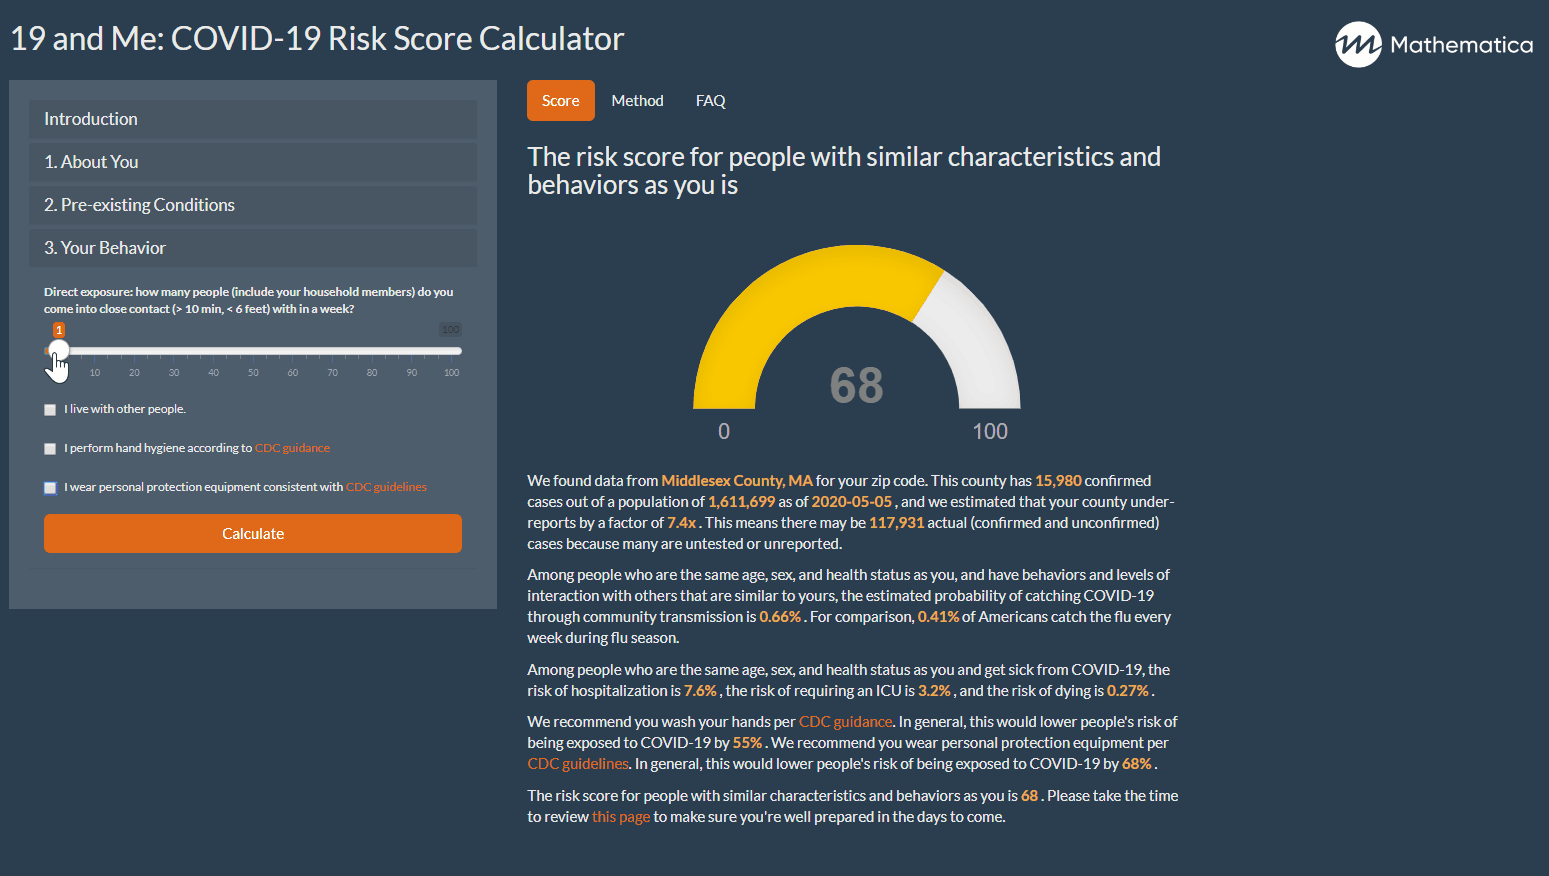 COVID-19 Risk Score Calculator